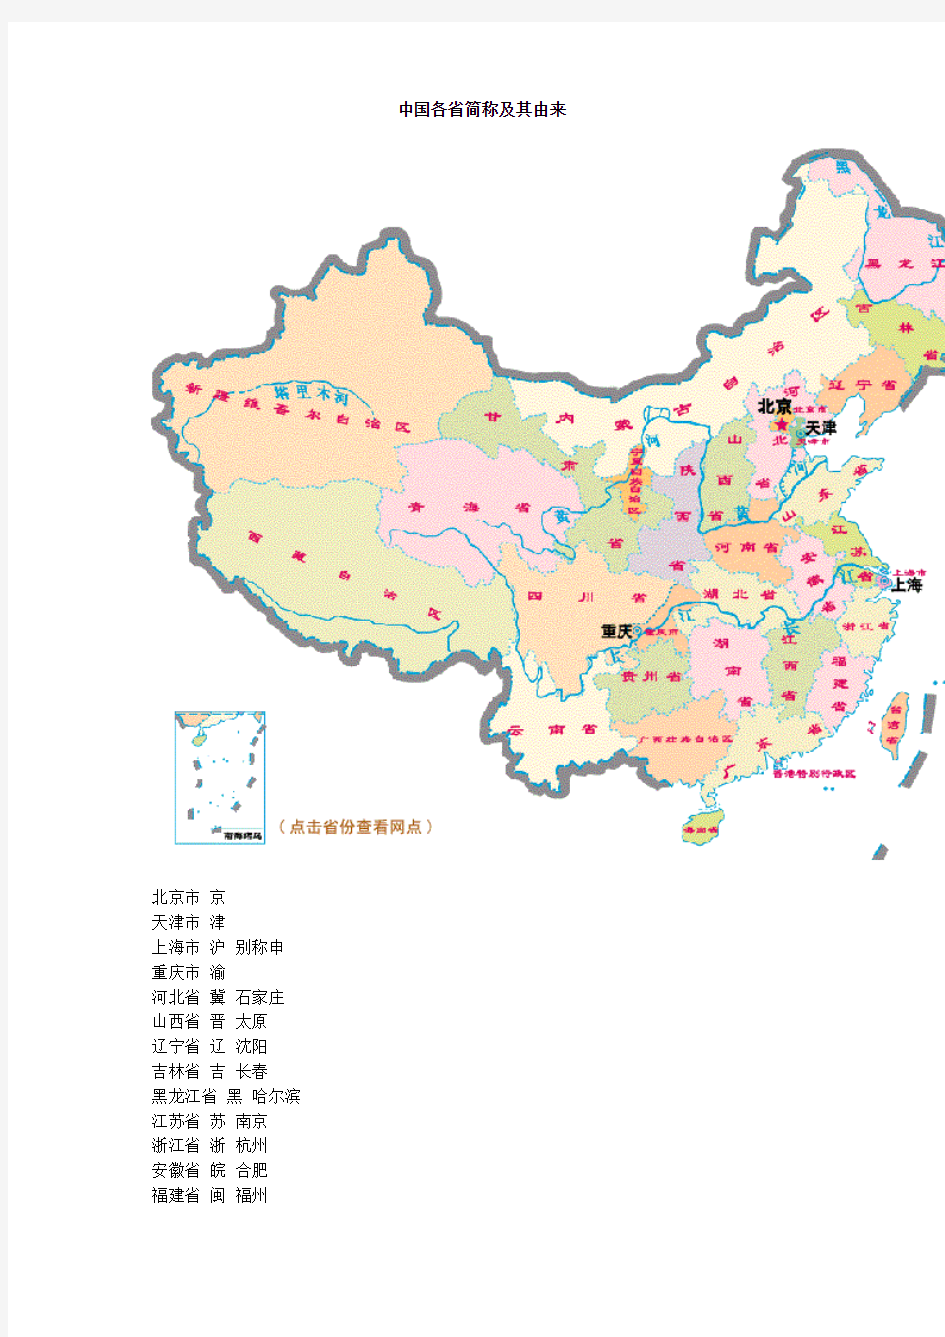 中国省级行政区划名称